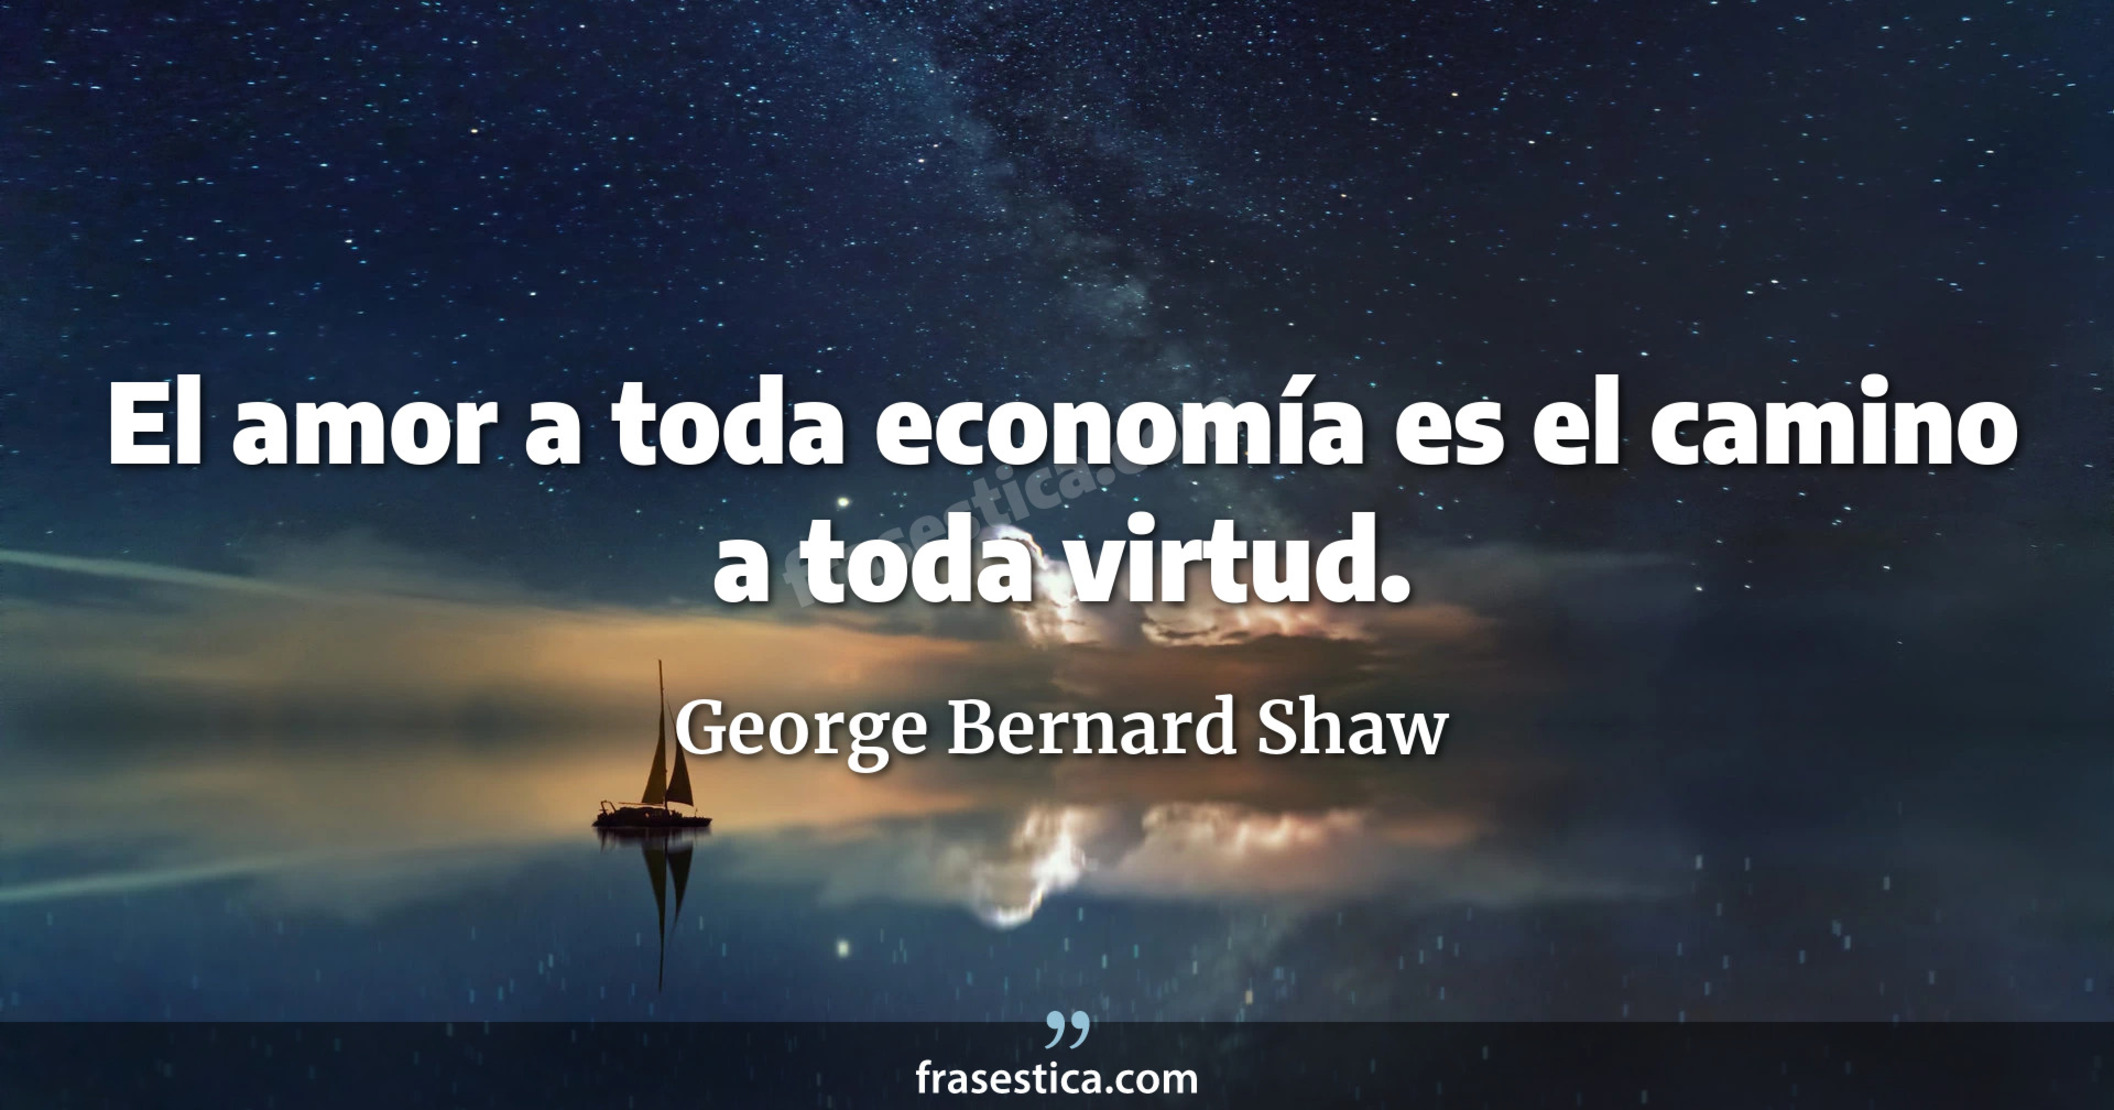 El amor a toda economía es el camino a toda virtud. - George Bernard Shaw